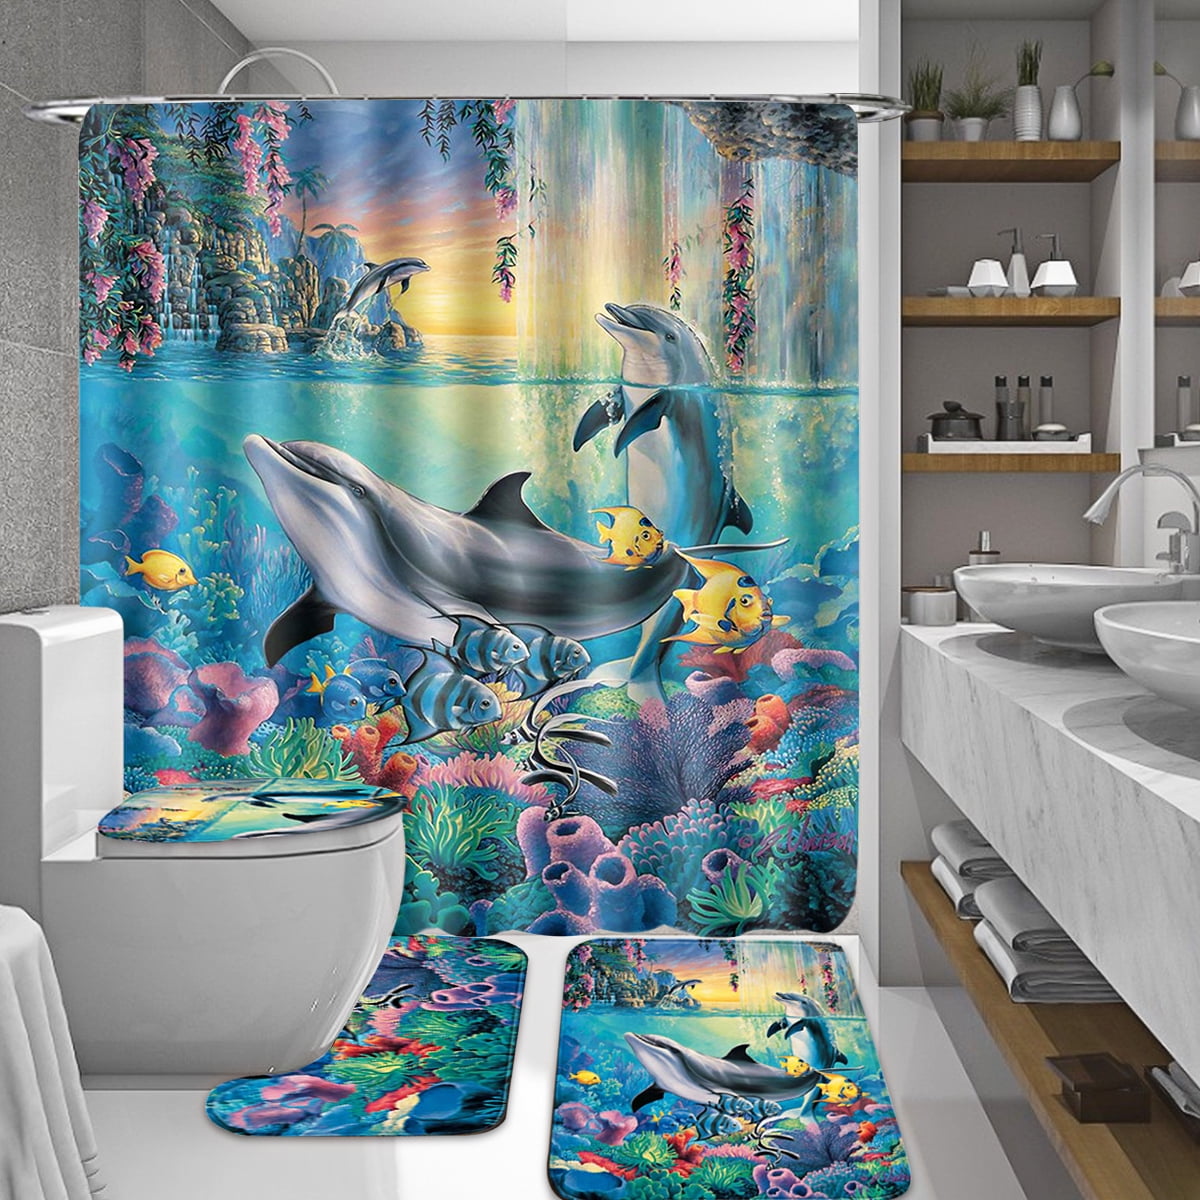 Details about   4pcs/Set Dolphin Bathroom Set Shower Curtain Toilet Seat Cover Bath Mat 